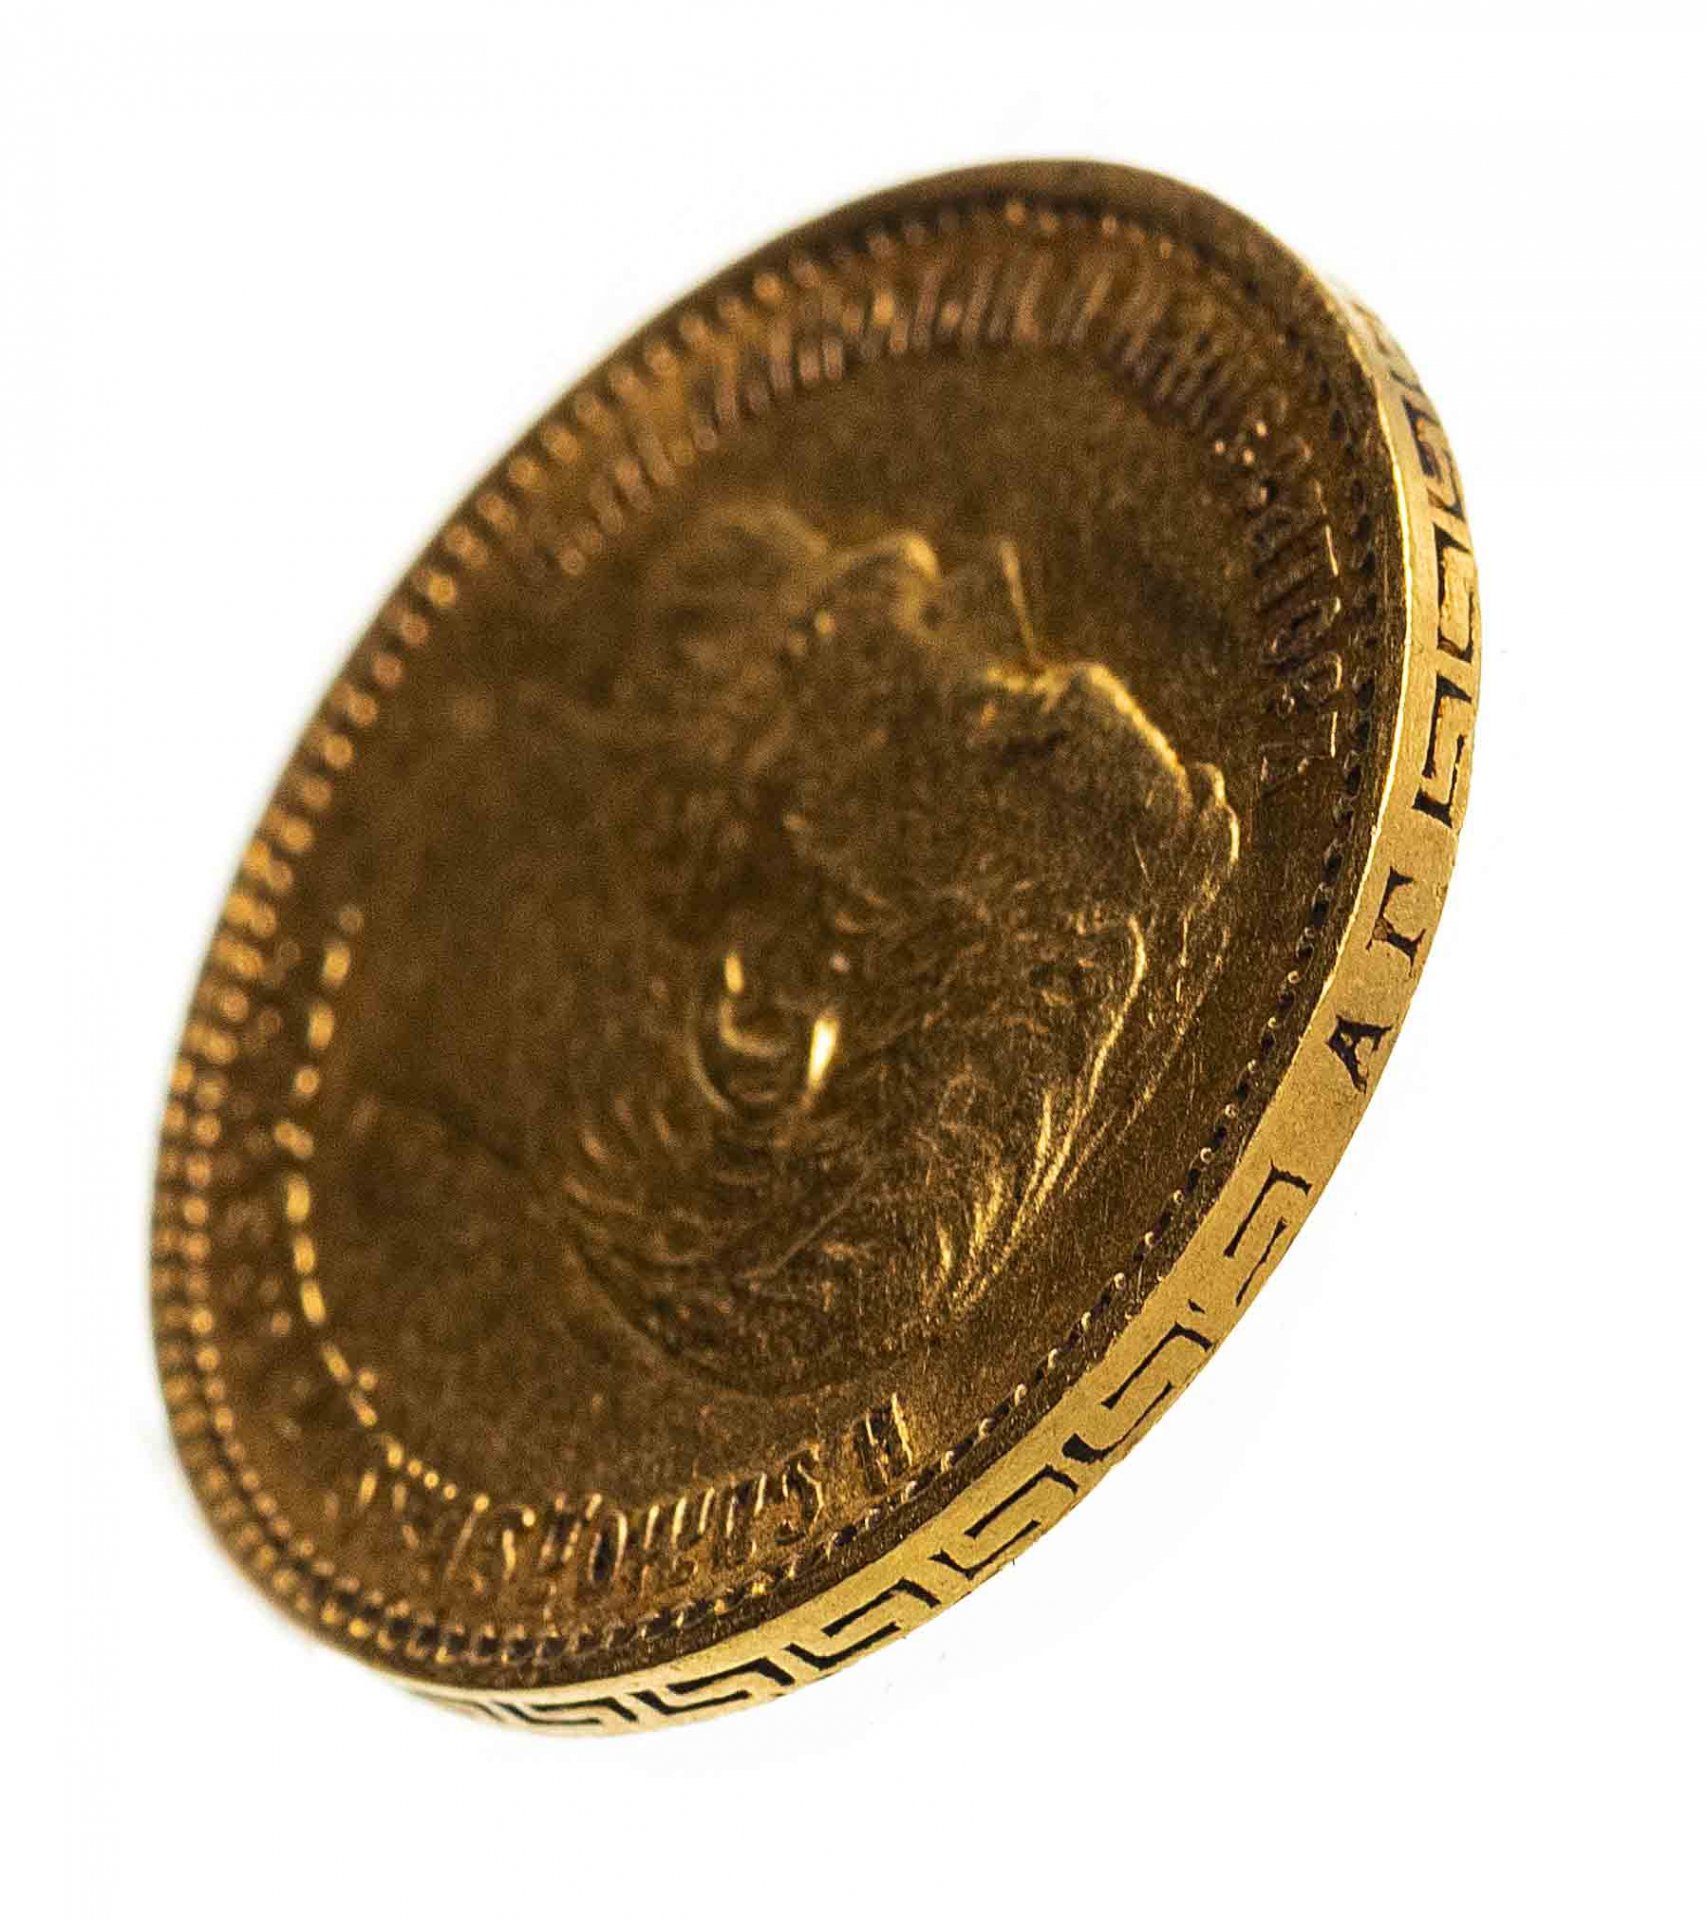 Золотой 5 рублей николая